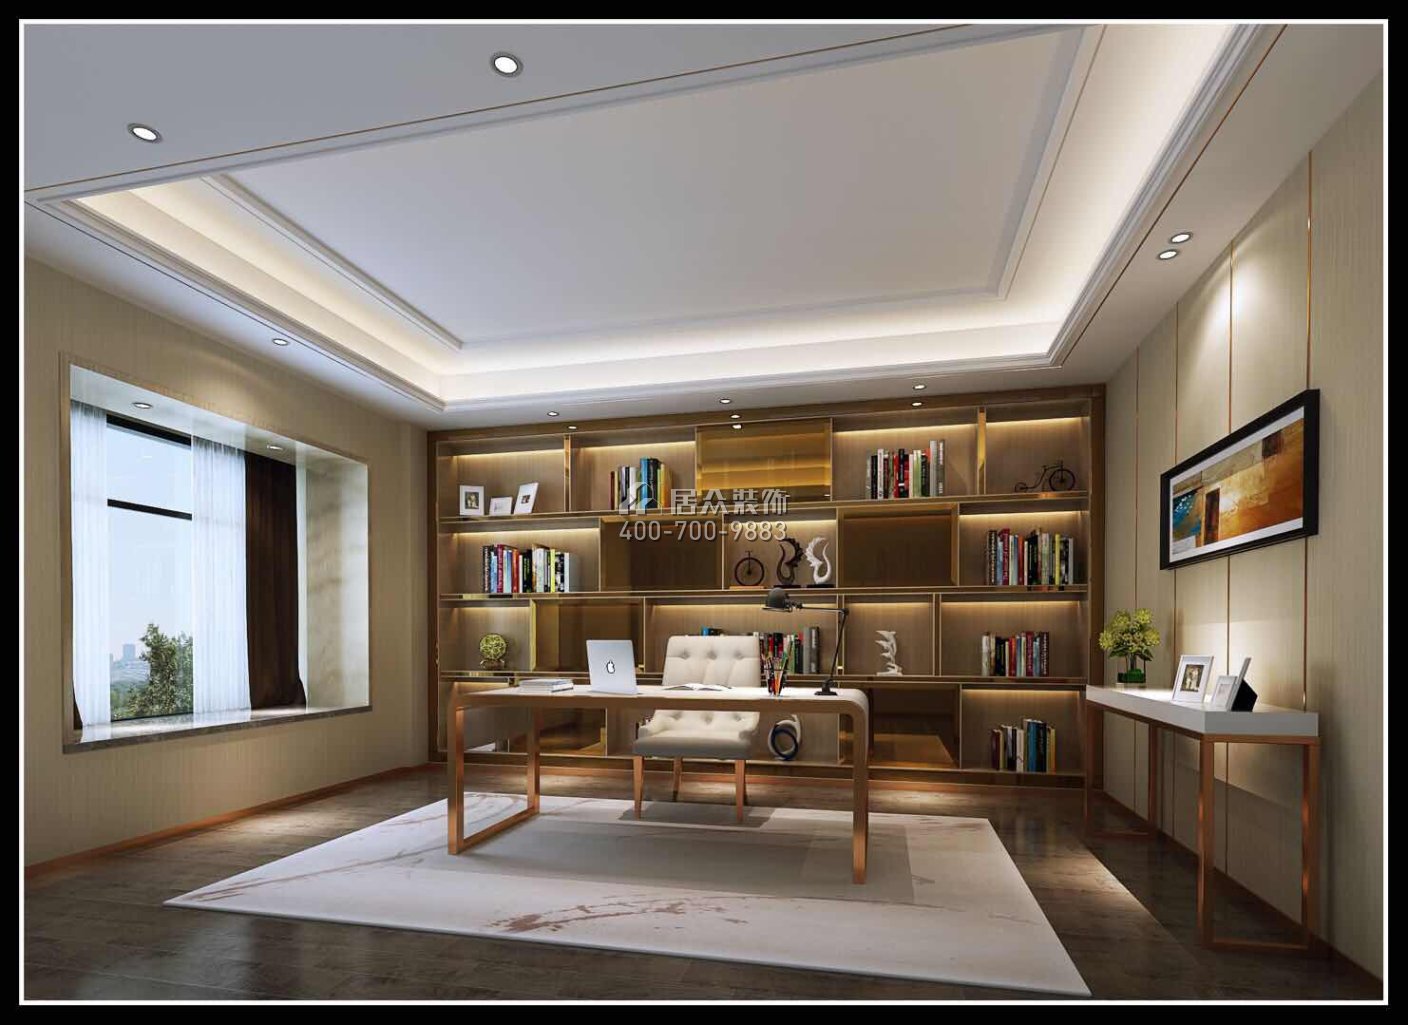 海御豪庭御峰322平方米现代简约风格别墅户型书房装修效果图